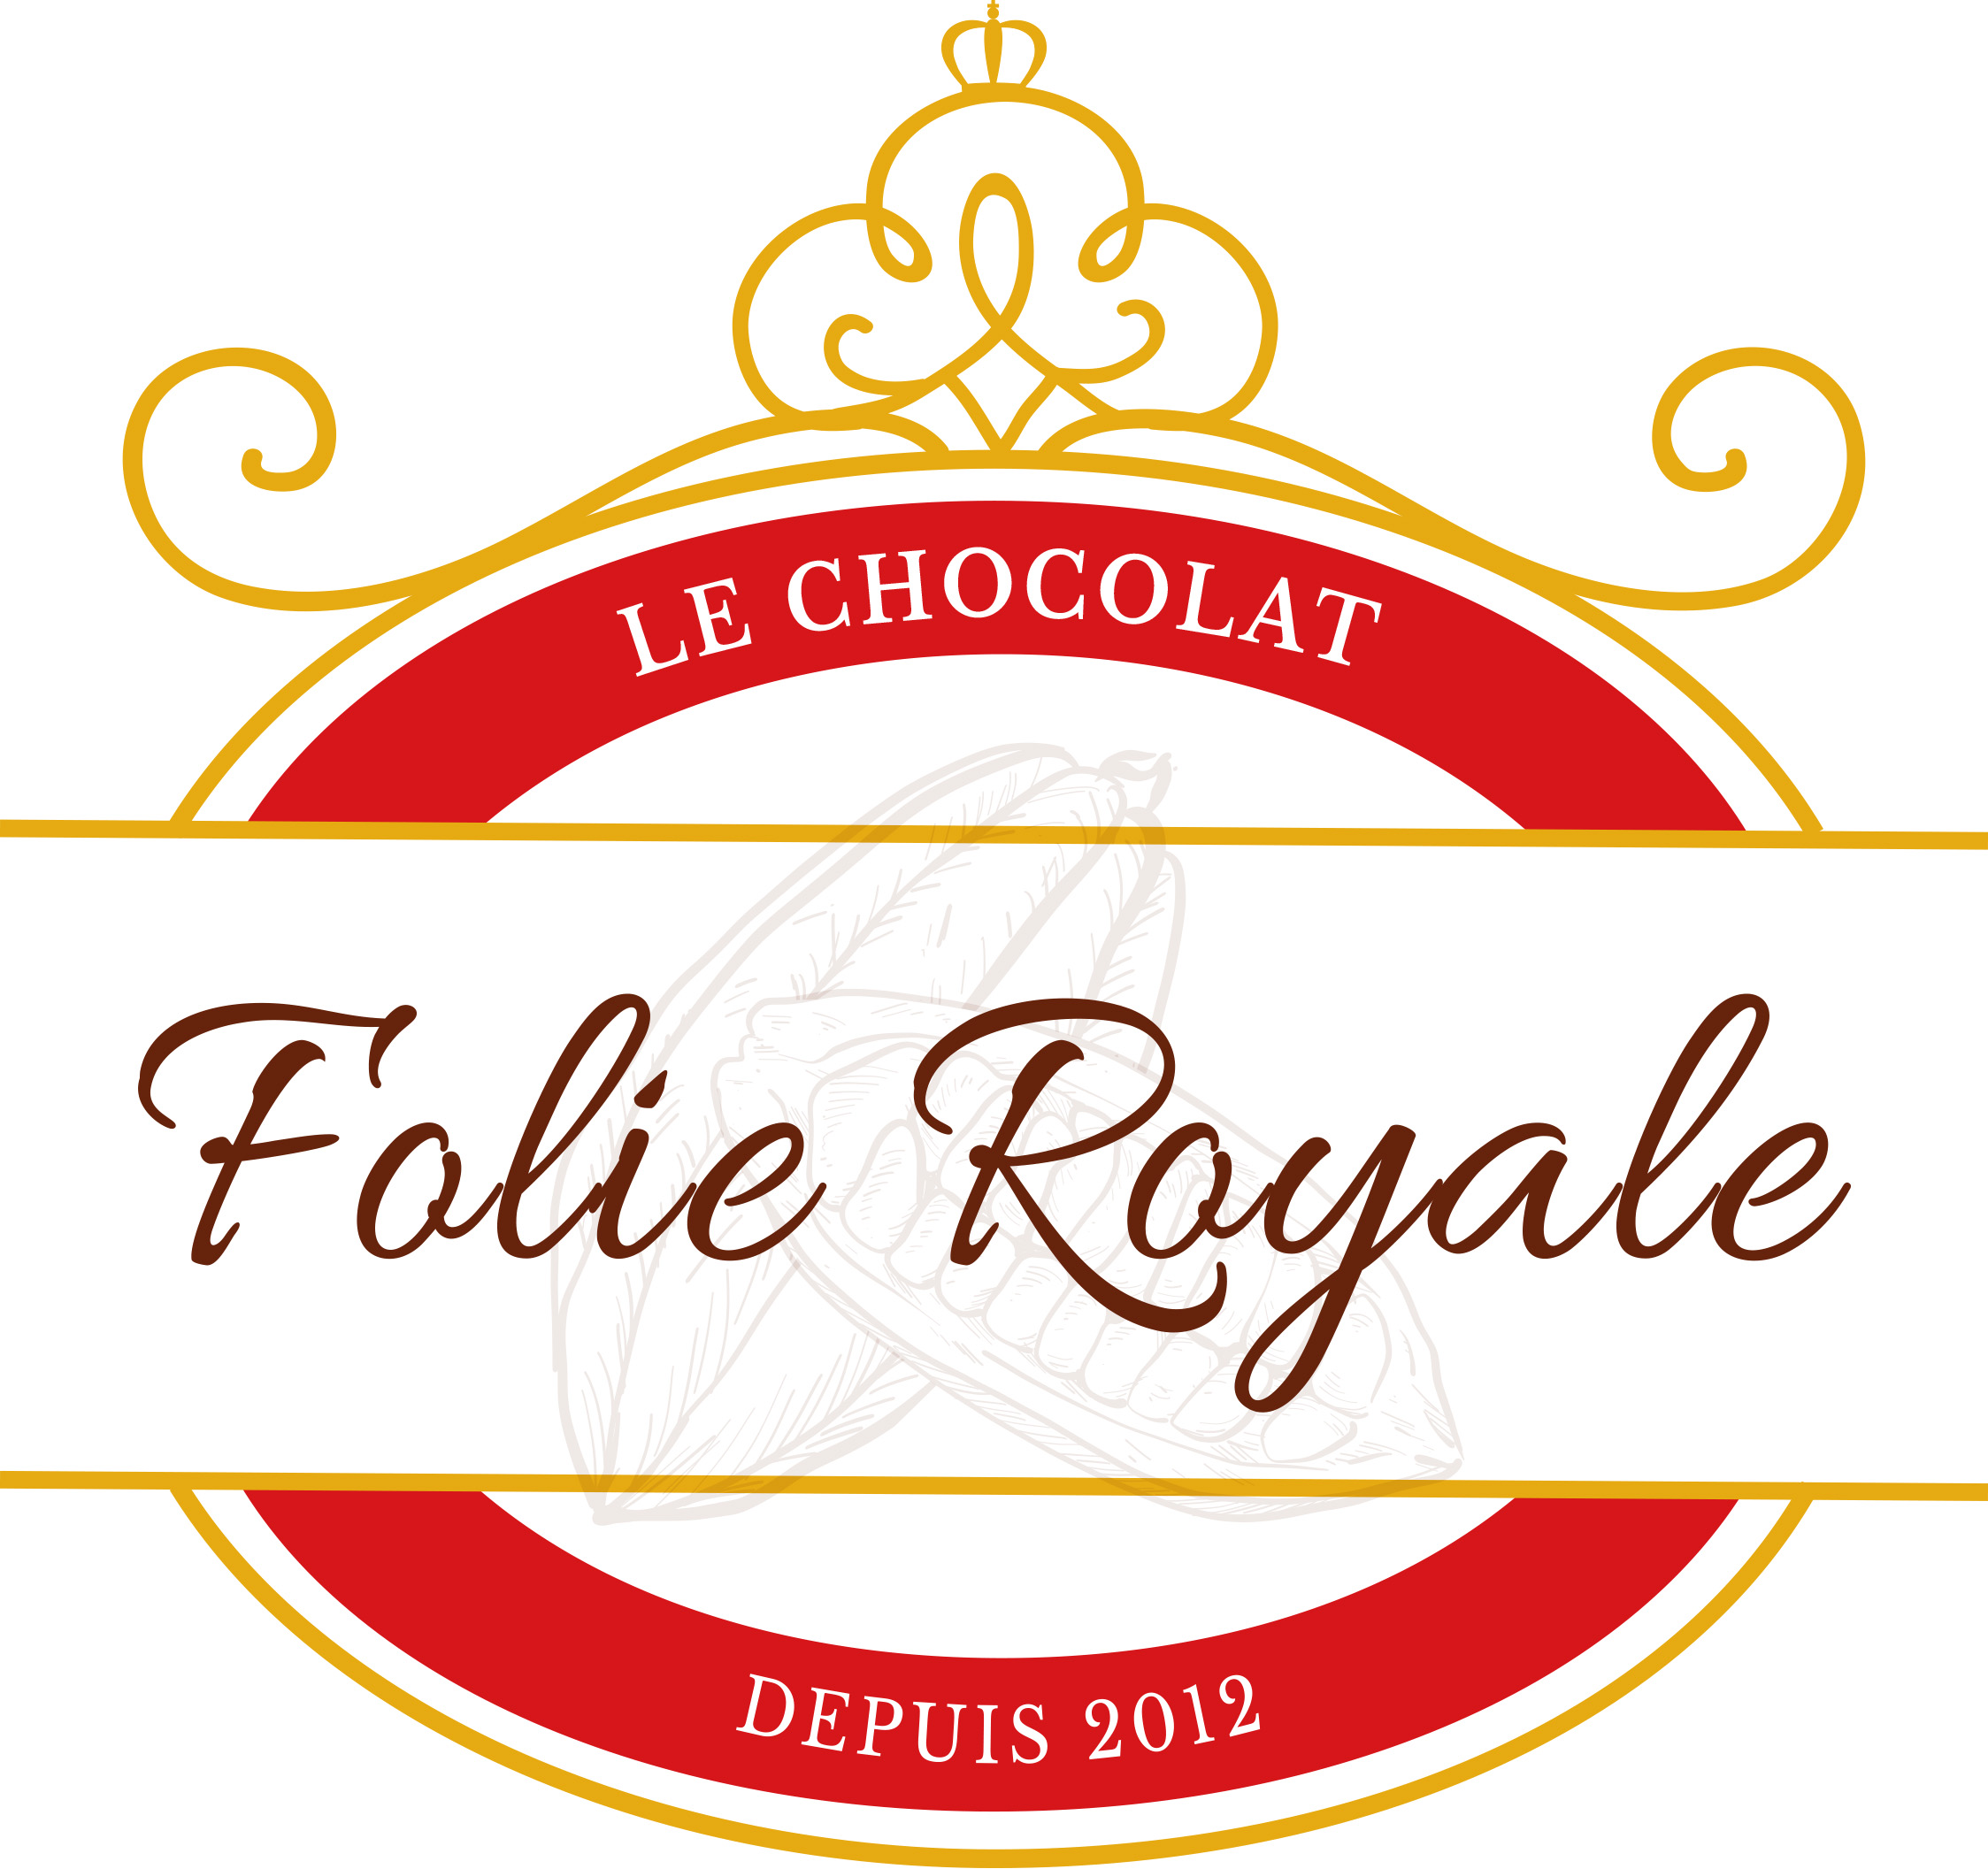 Le Chocolat FOLIE ROYALE